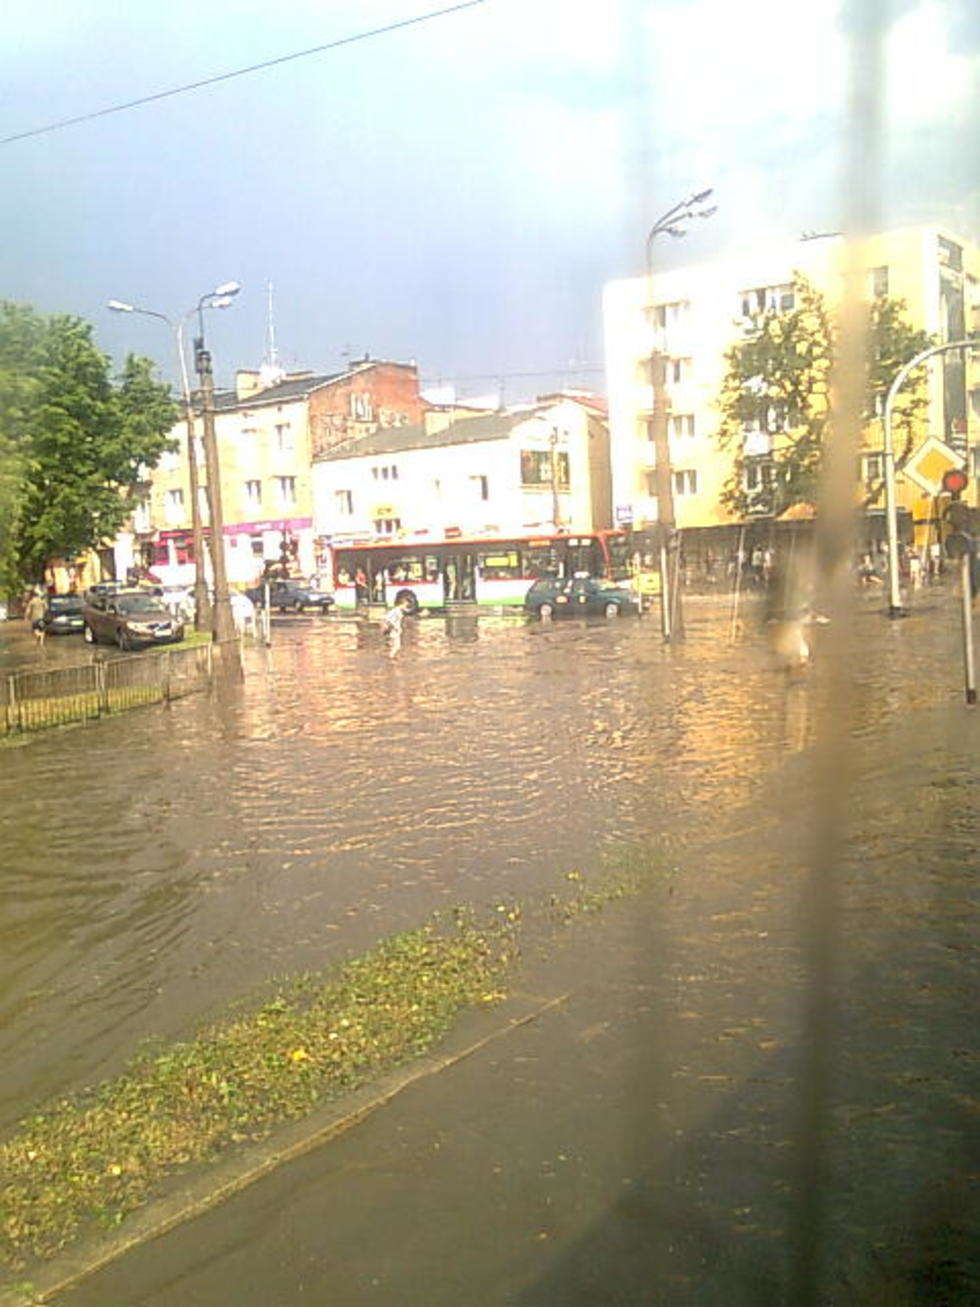  Ulica Gleboka w Lublinie widziana z trolejbusu 153